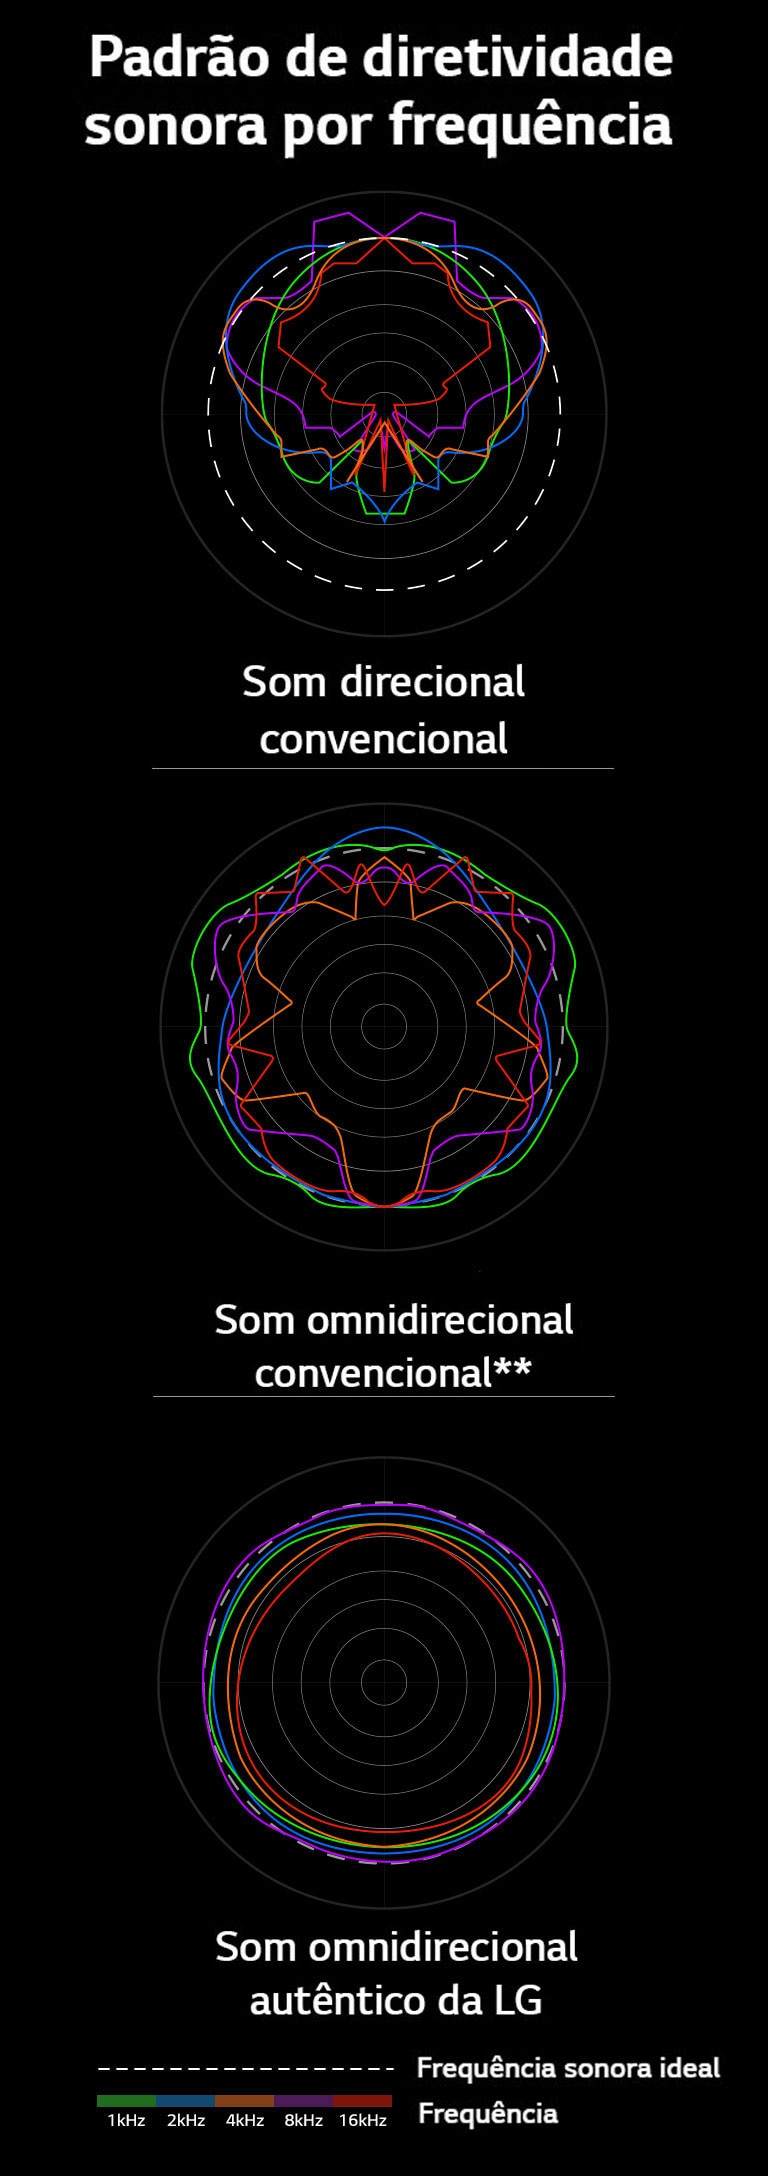 Imagem mostrando um comparativo dos comprimentos de onda do som direcional convencional e do som omnidirecional convencional com os comprimentos de onda do som omnidirecional autêntico da LG.